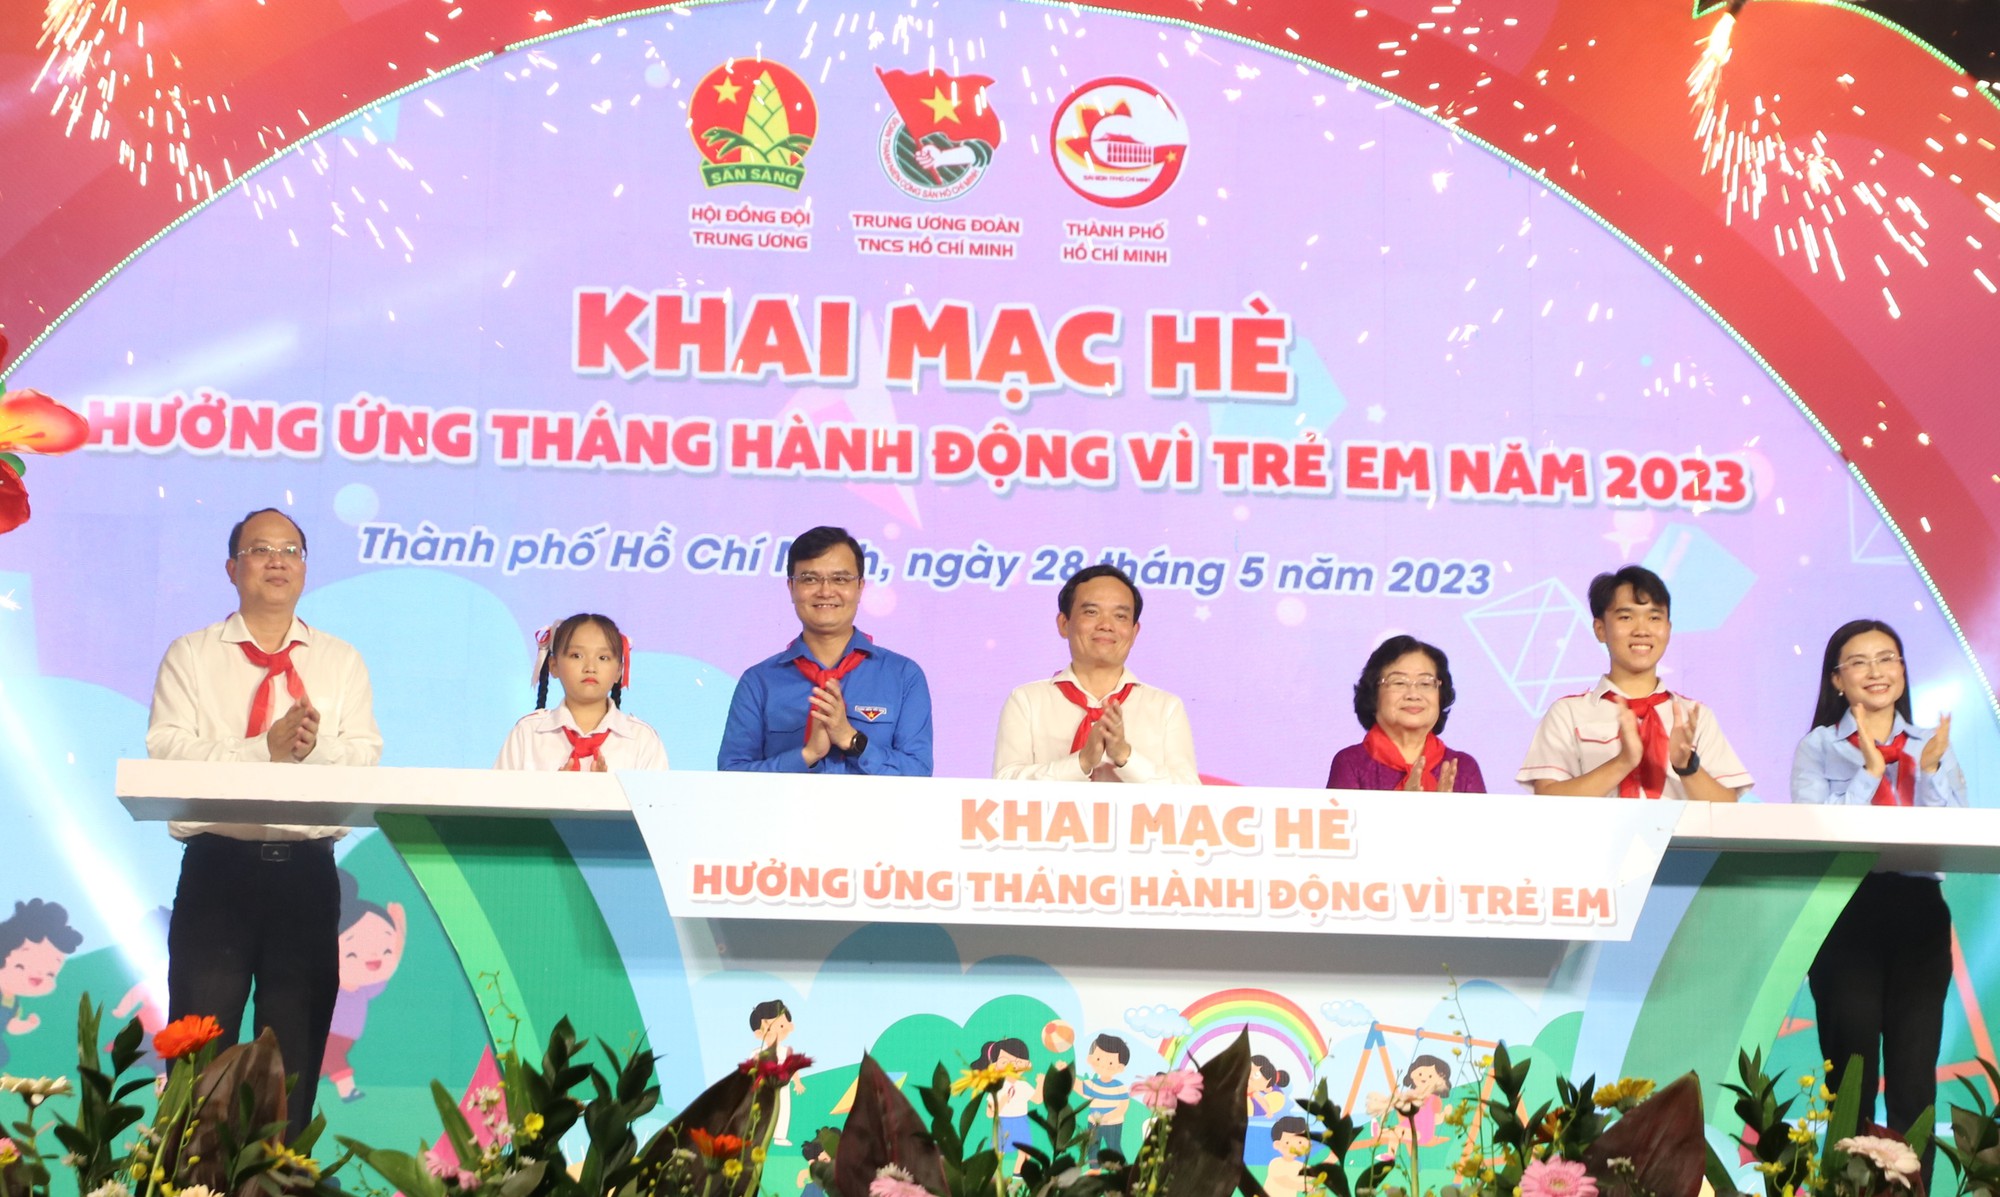 Phố đi bộ Nguyễn Huệ sôi động với chuỗi sự kiện Khai mạc hè 2023 - Ảnh 2.